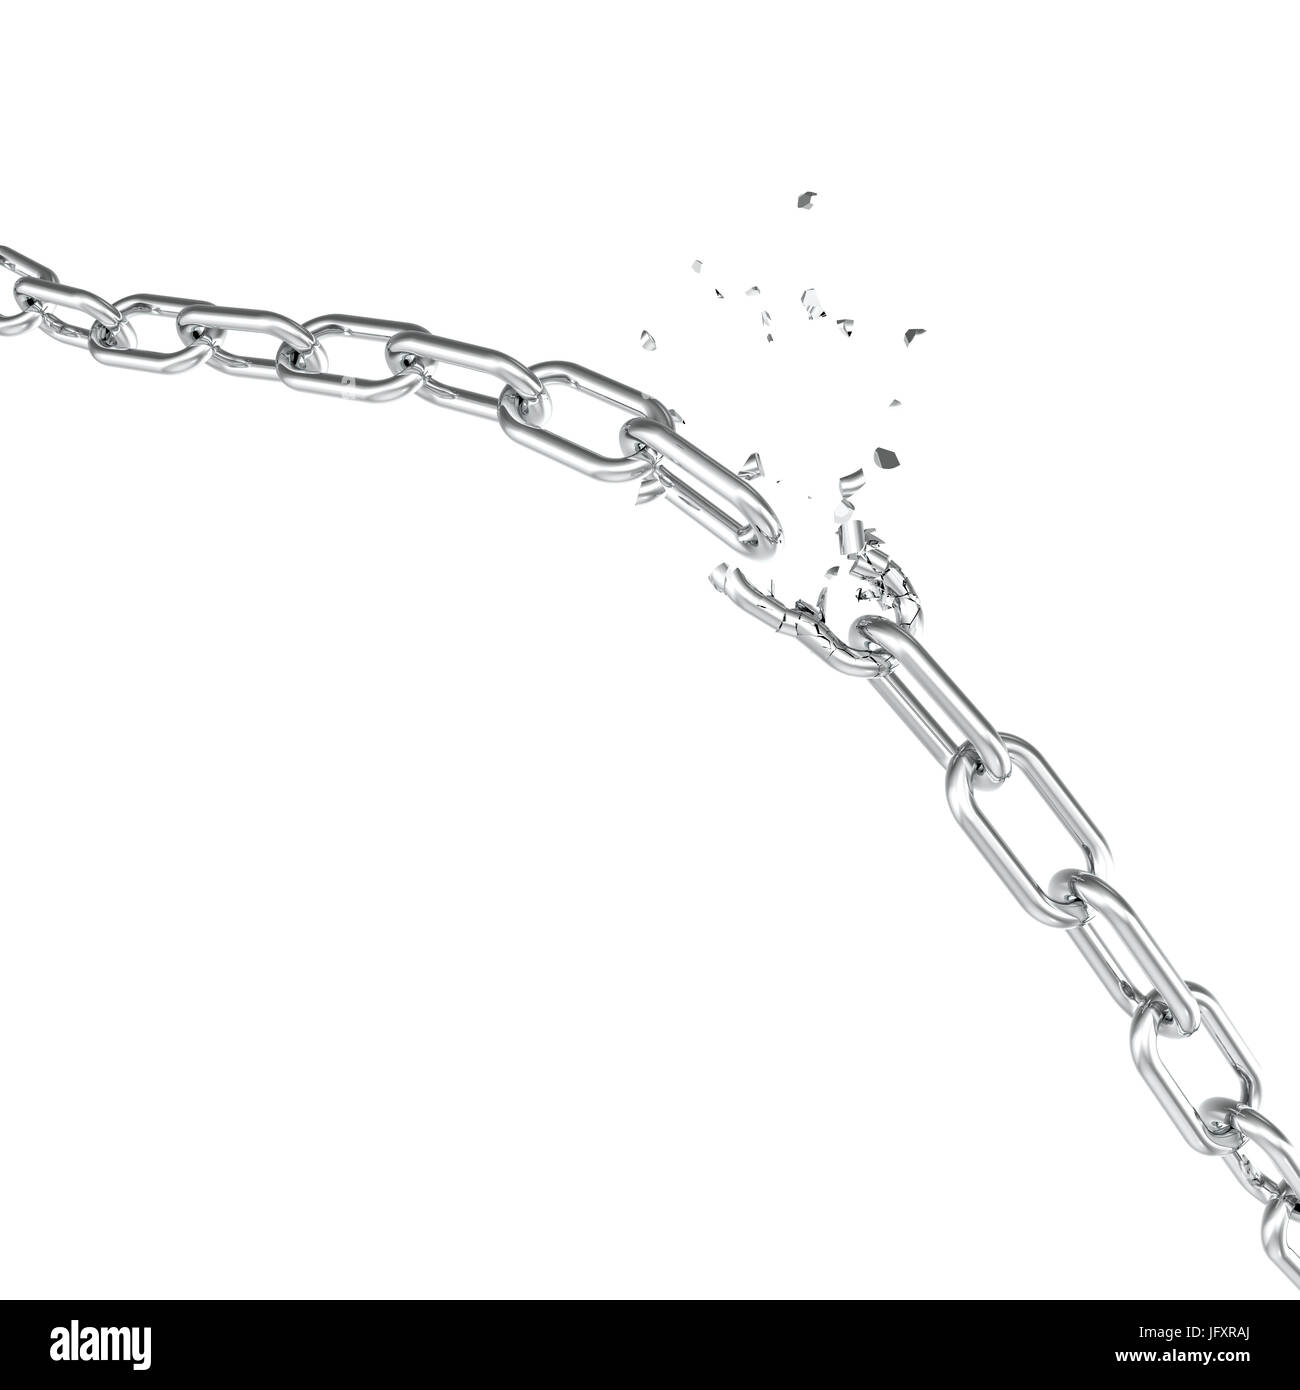 Broken Steel, Casse de chaîne métallique liens liberté concept. Forte perturbation de l'acier, 3D illustration Banque D'Images